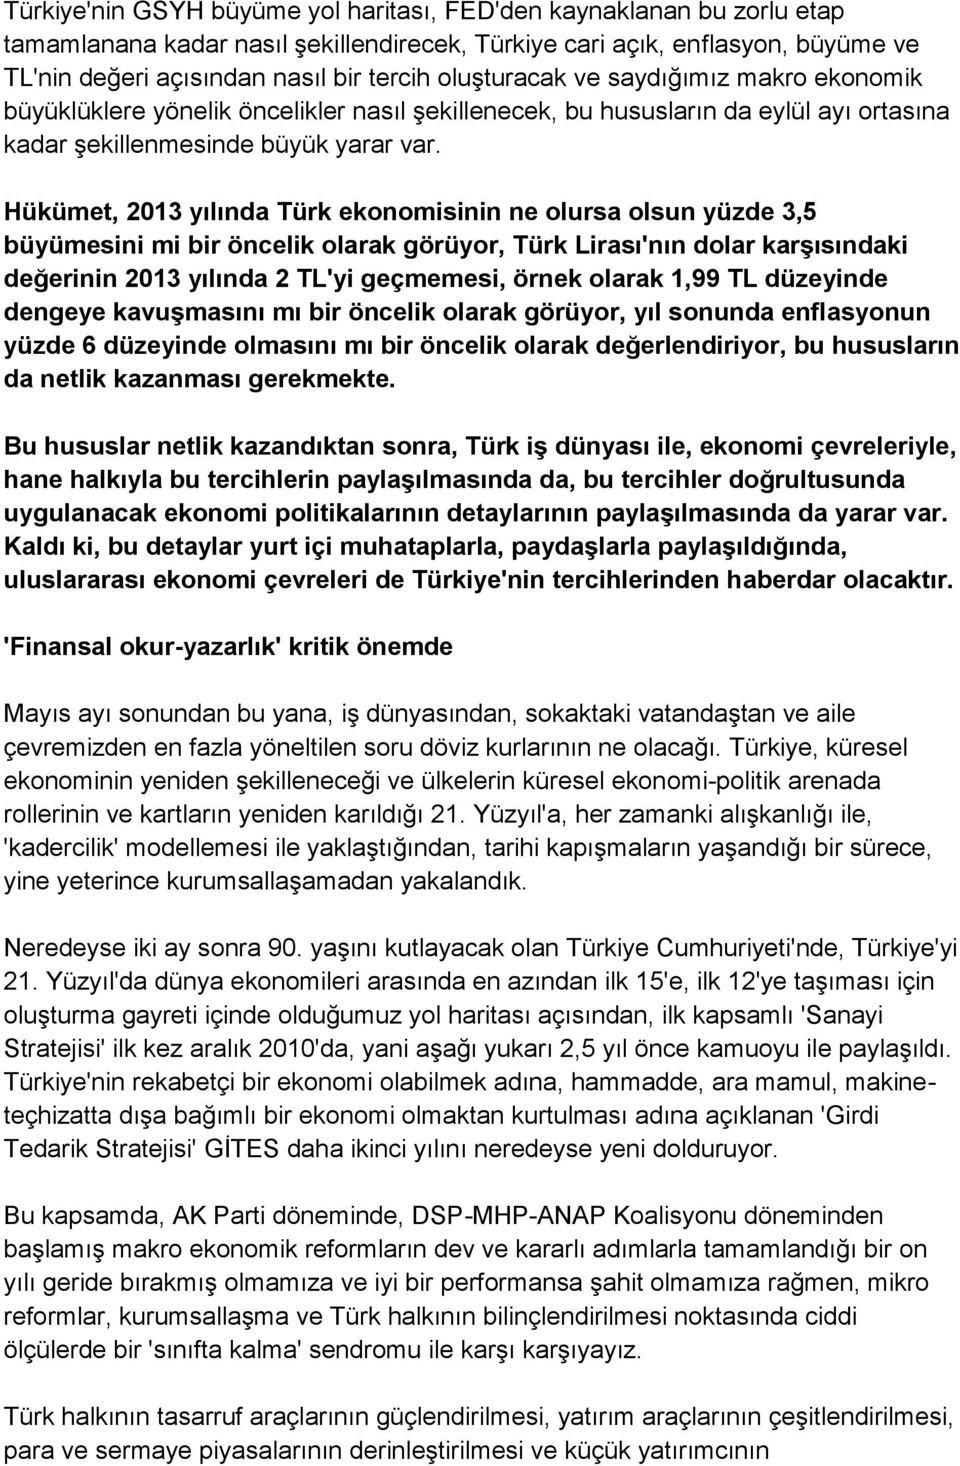 Hükümet, 2013 yılında Türk ekonomisinin ne olursa olsun yüzde 3,5 büyümesini mi bir öncelik olarak görüyor, Türk Lirası'nın dolar karşısındaki değerinin 2013 yılında 2 TL'yi geçmemesi, örnek olarak